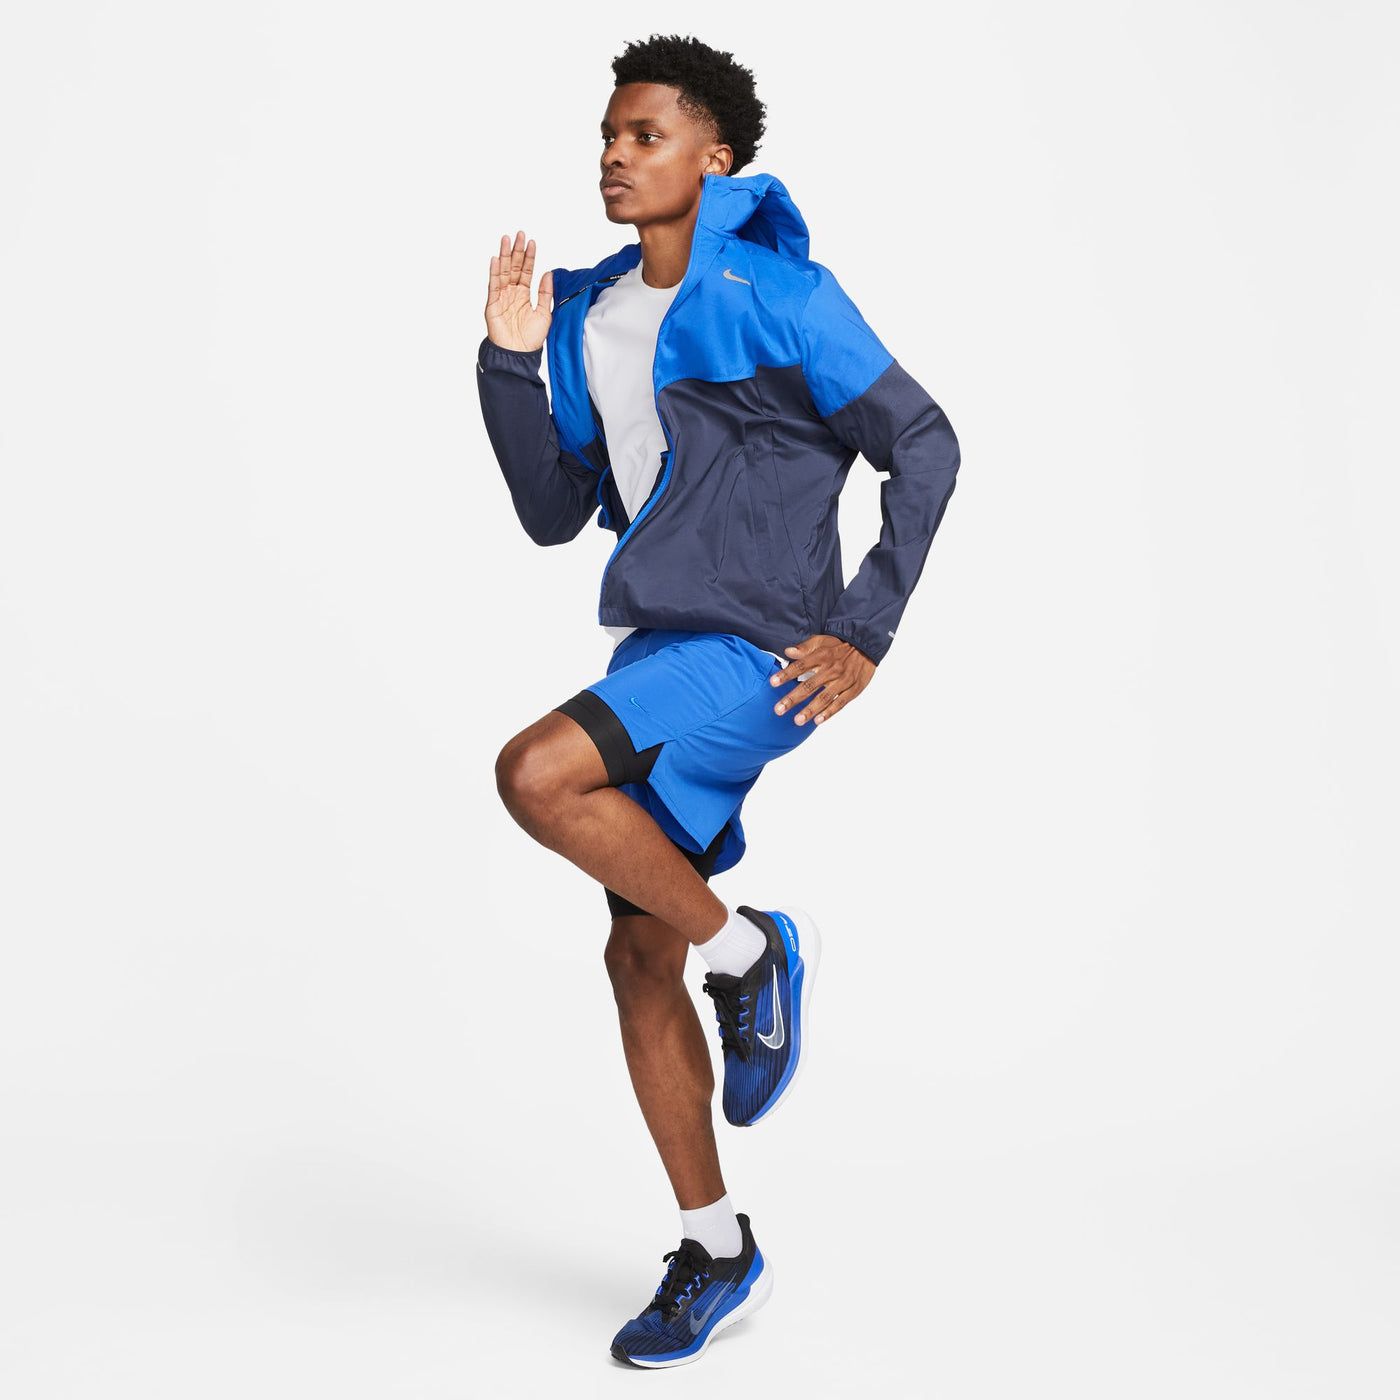 Men's Nike Windrunner Jacket - FB7540-480